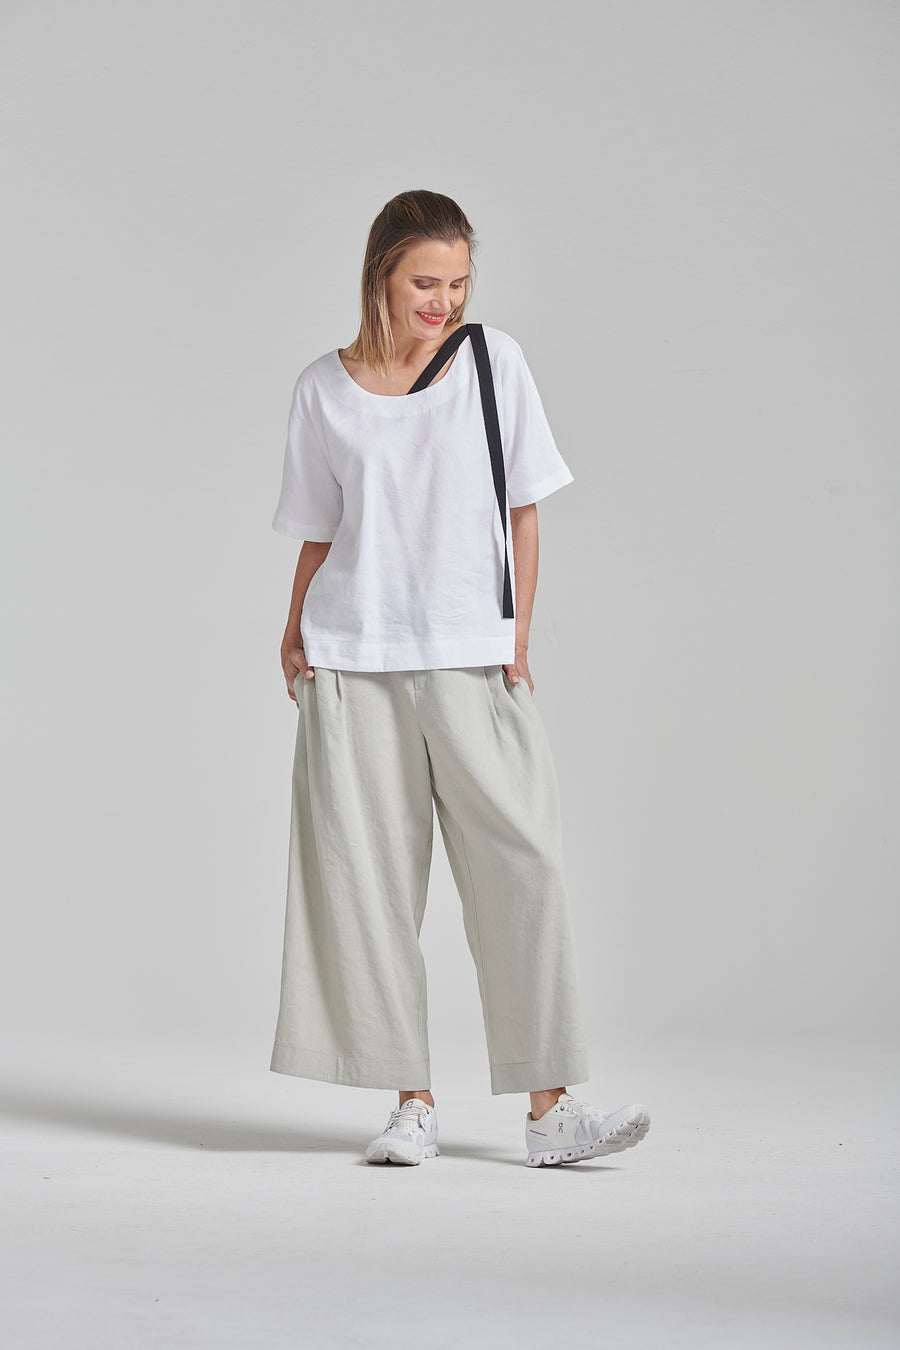 Summer elastic linen/viscose blend pants